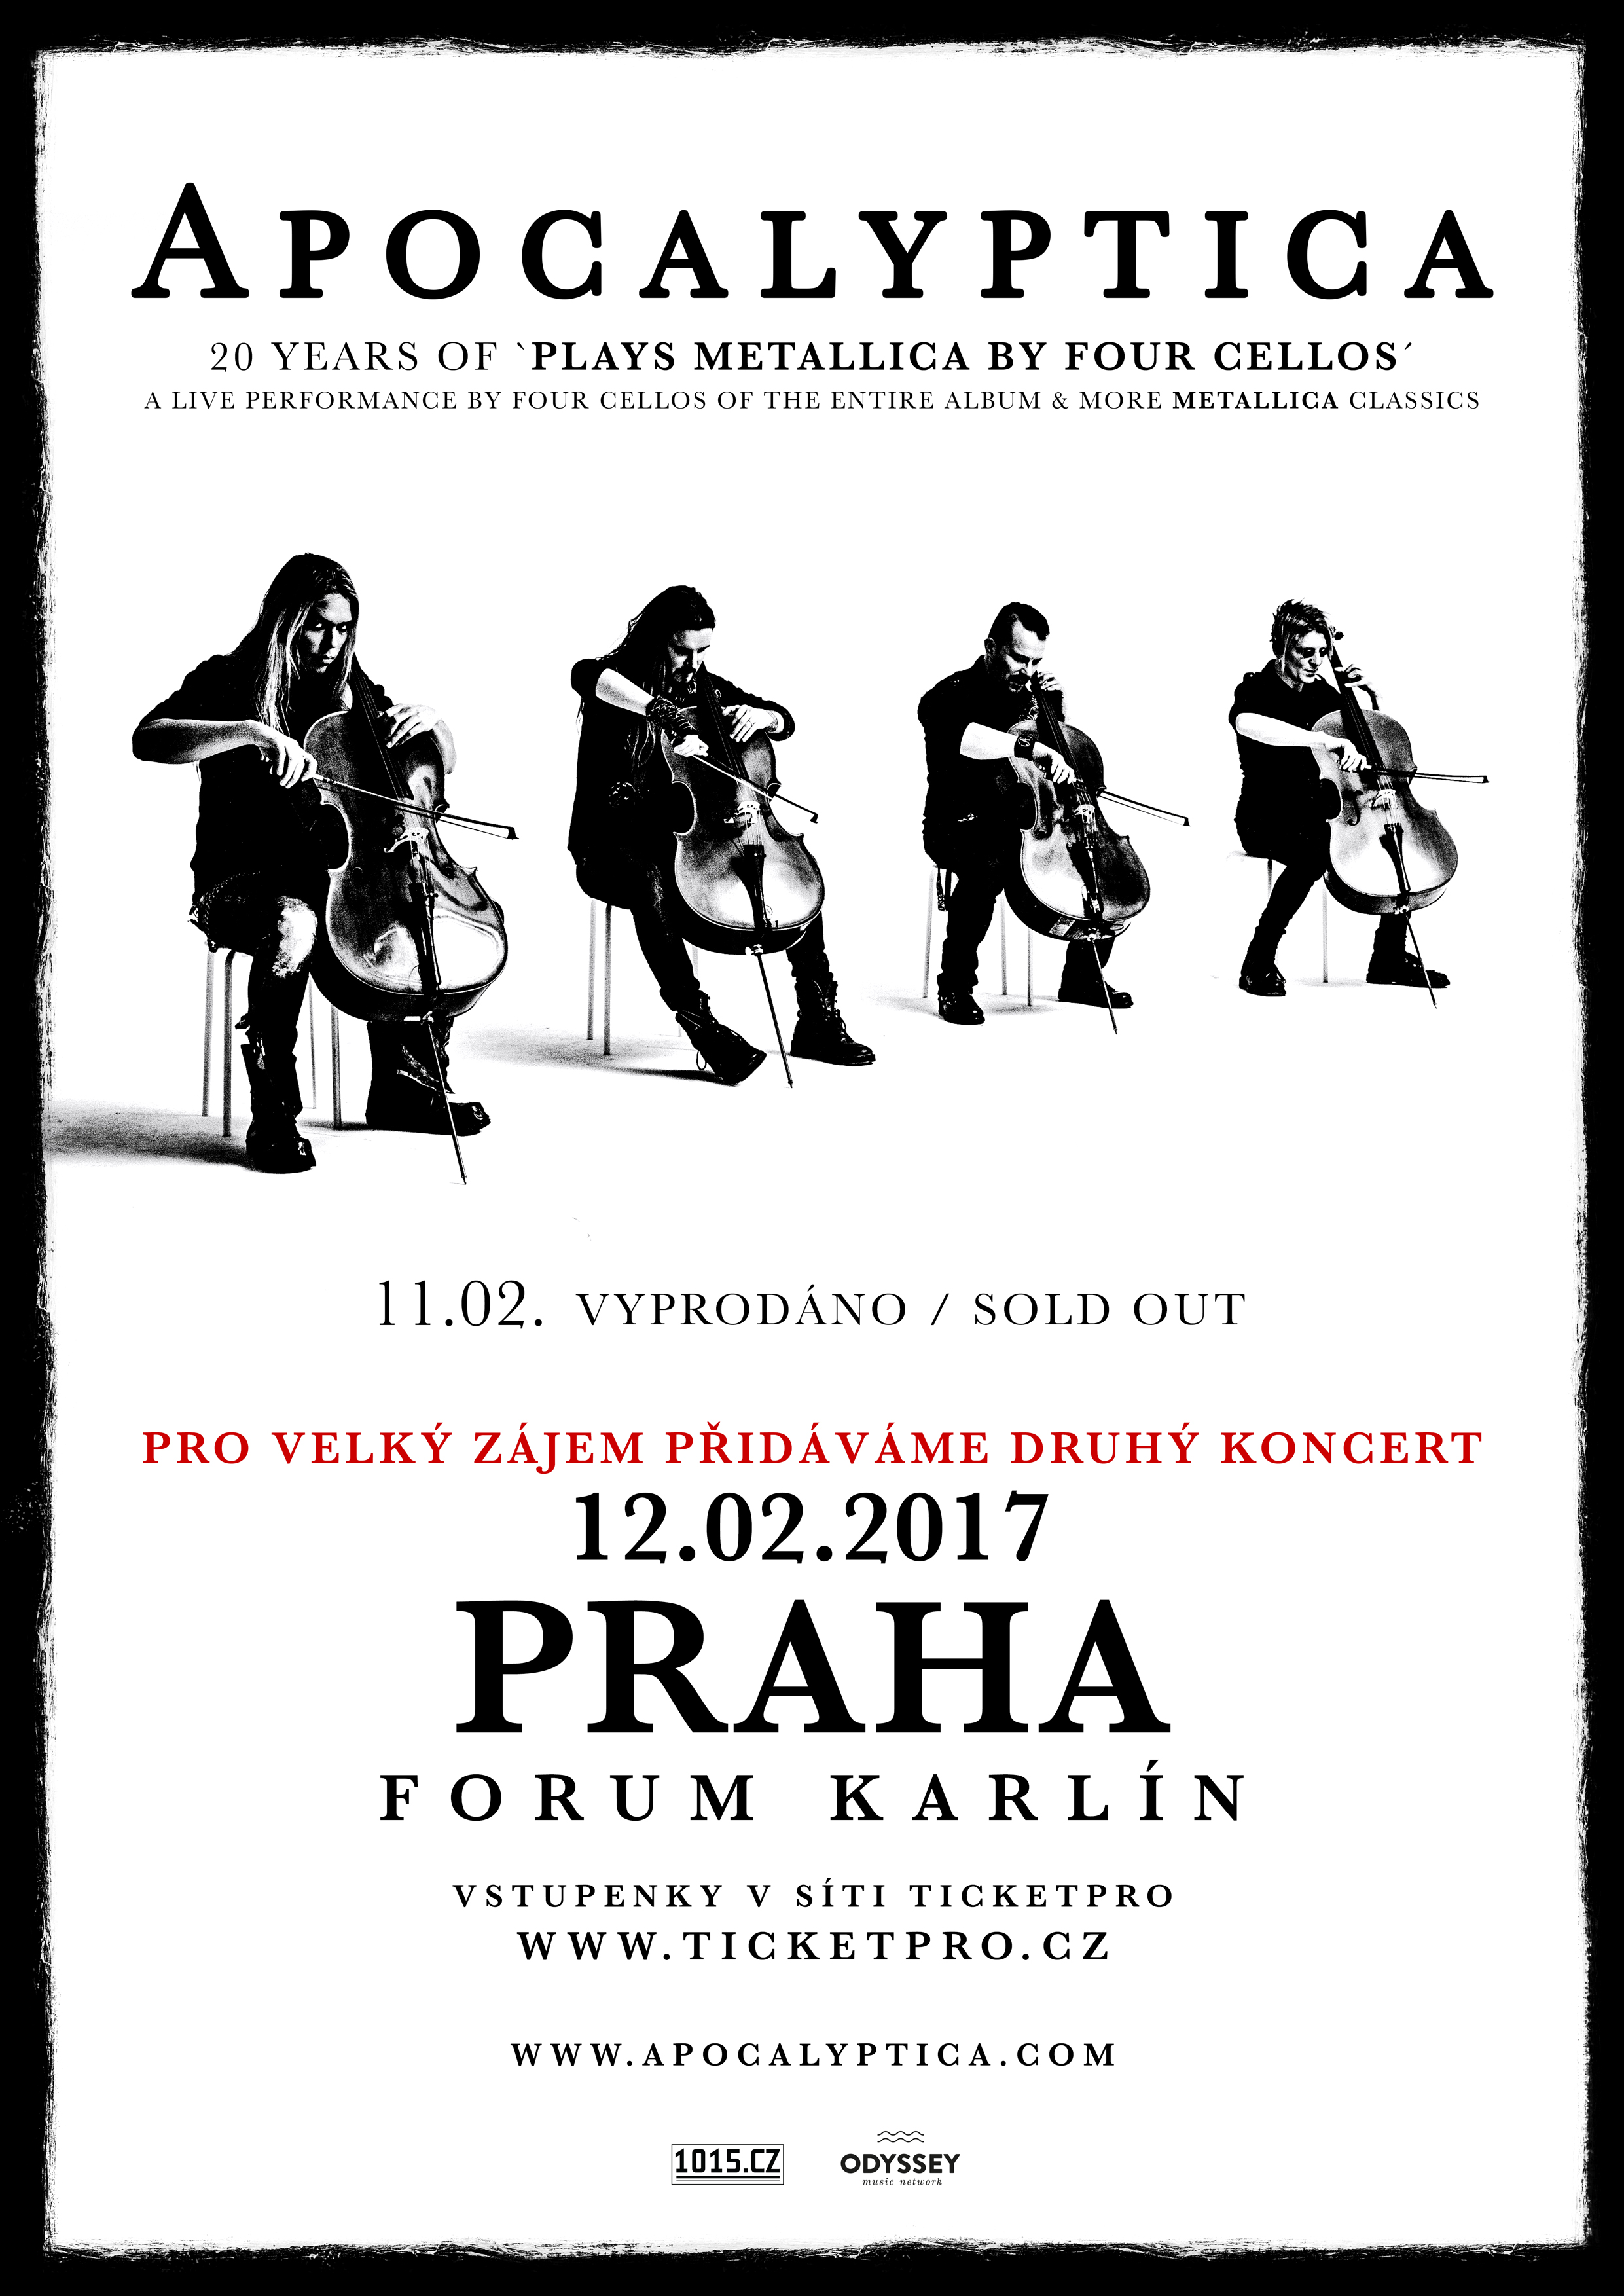 APOCALYPTICA vyprodala pražský koncert v Karlíně, pro velký zájem přidává další